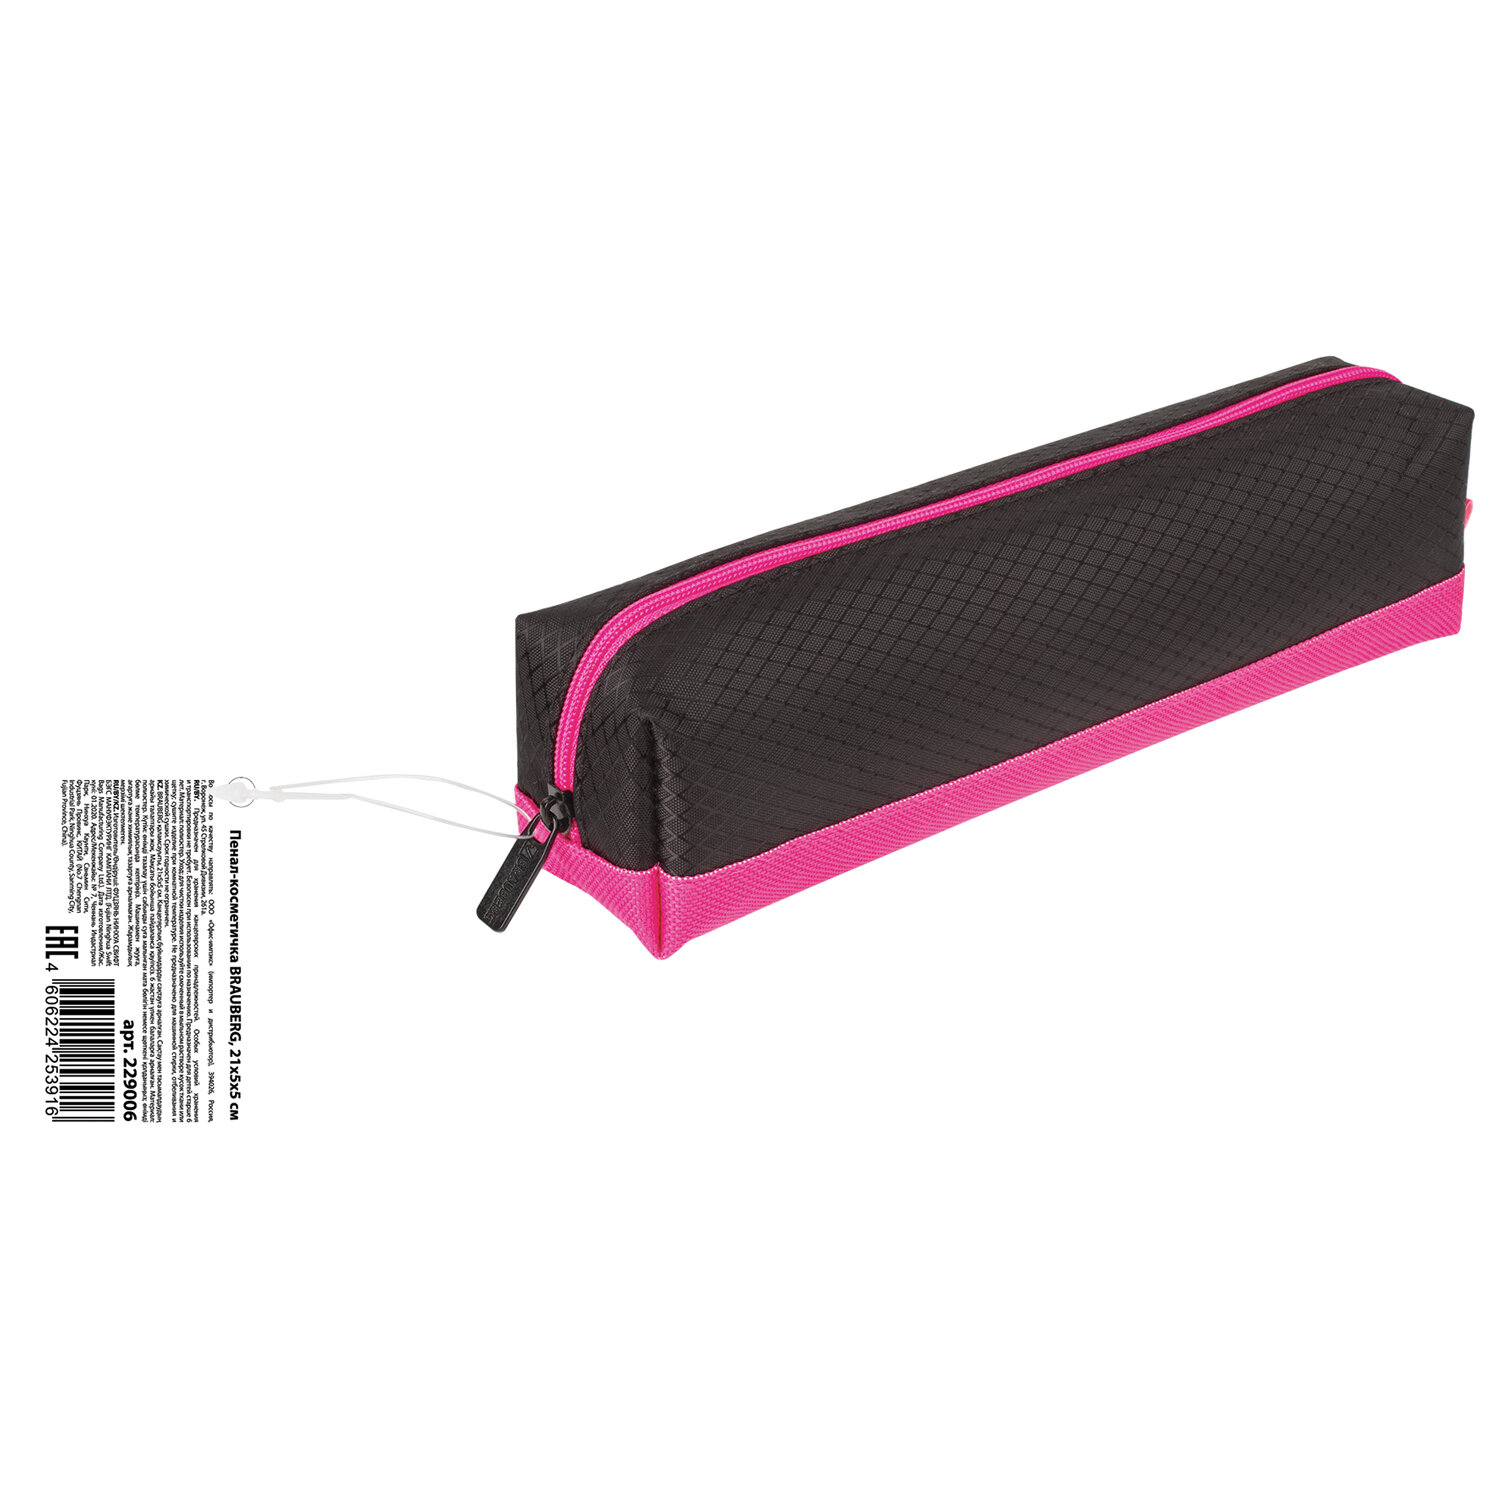 Пенал-косметичка Brauberg мягкий, "Black Bright", черно-розовый, 21х5х5 см (229006), фото